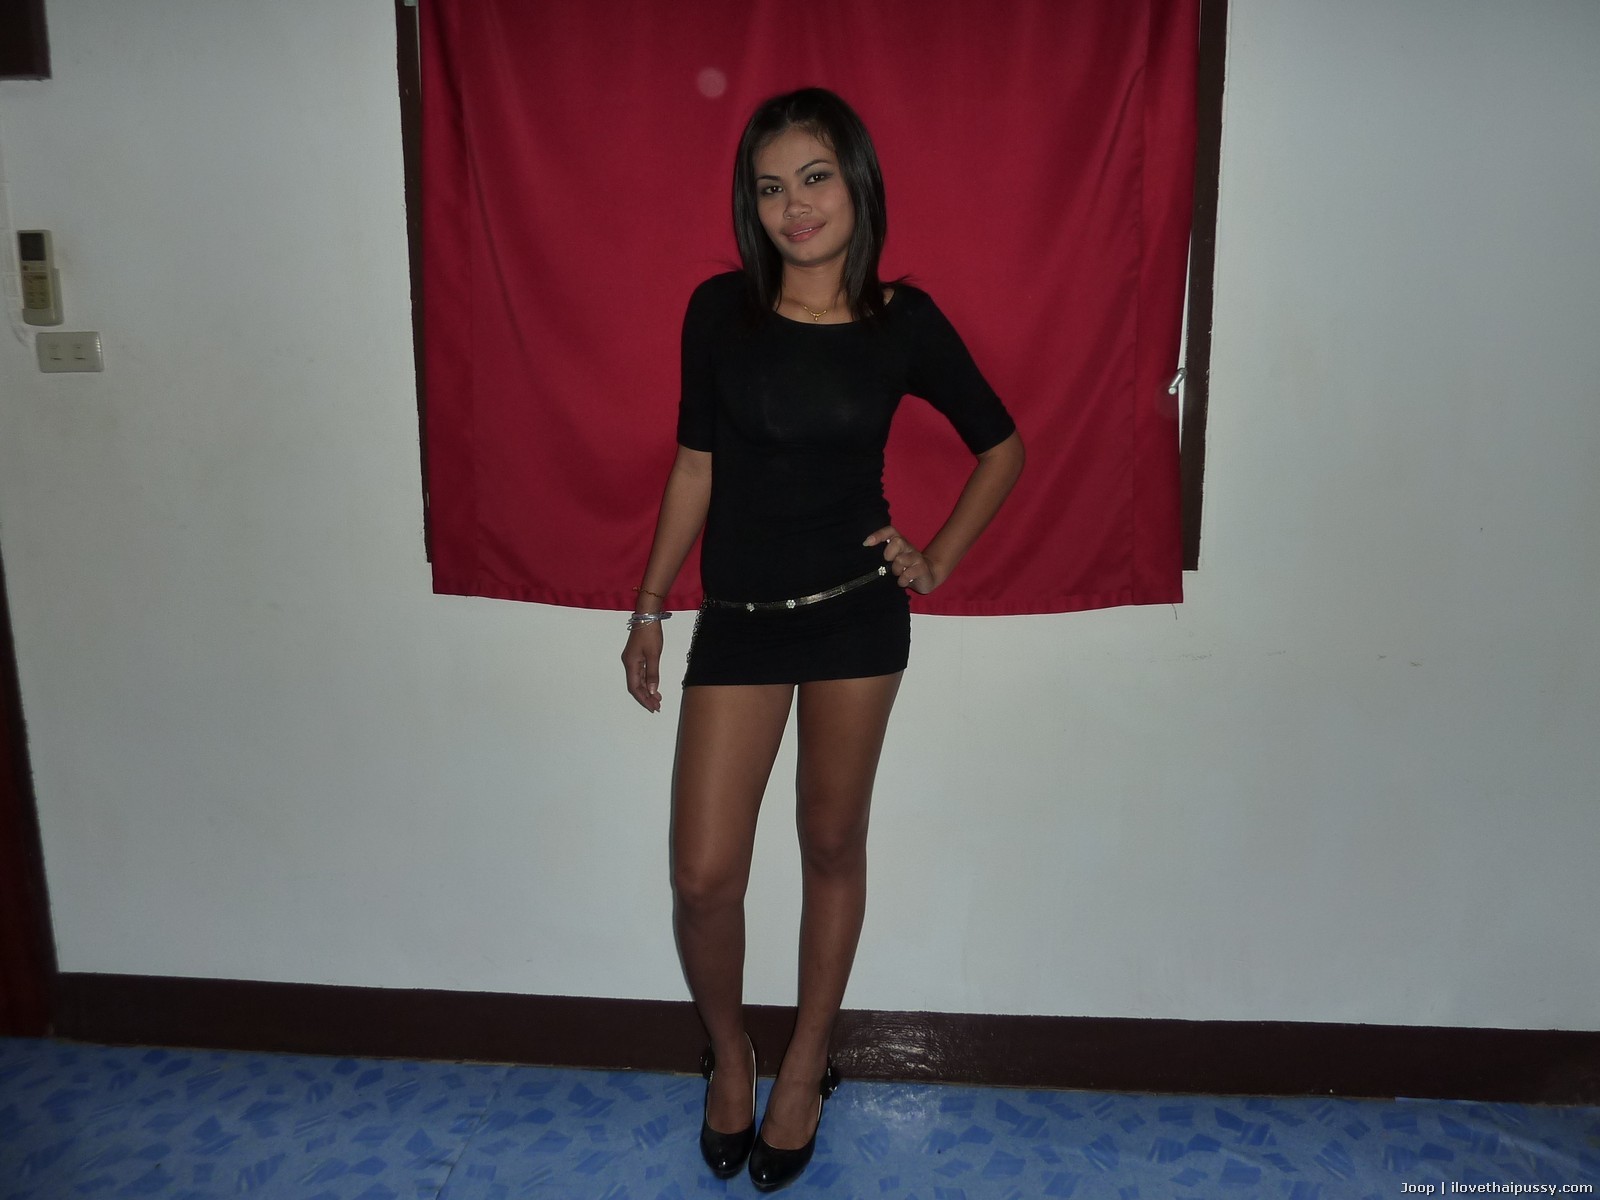 Une prostituée thaïlandaise chaude baisée à cru par un touriste sexuel fou une salope asiatique méchante
 #67978689